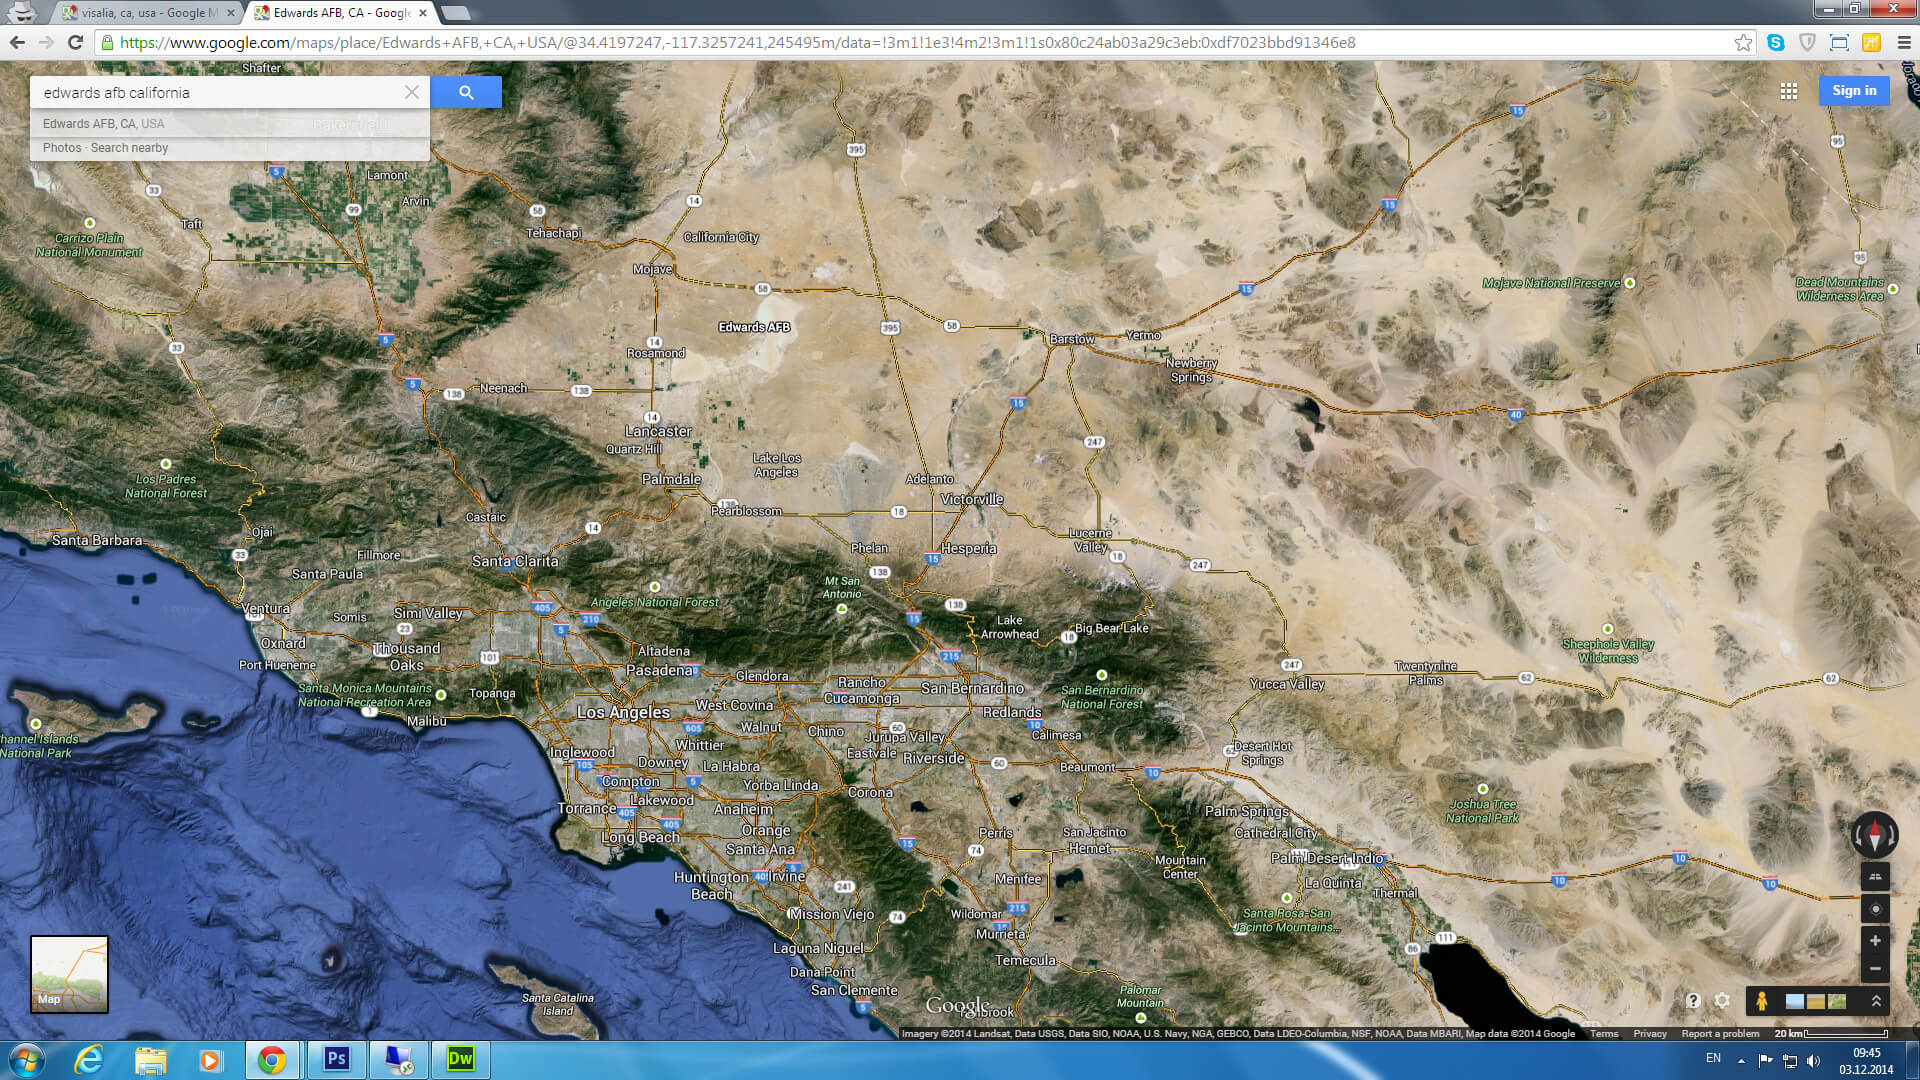 edwards afb carte californie eu satellite